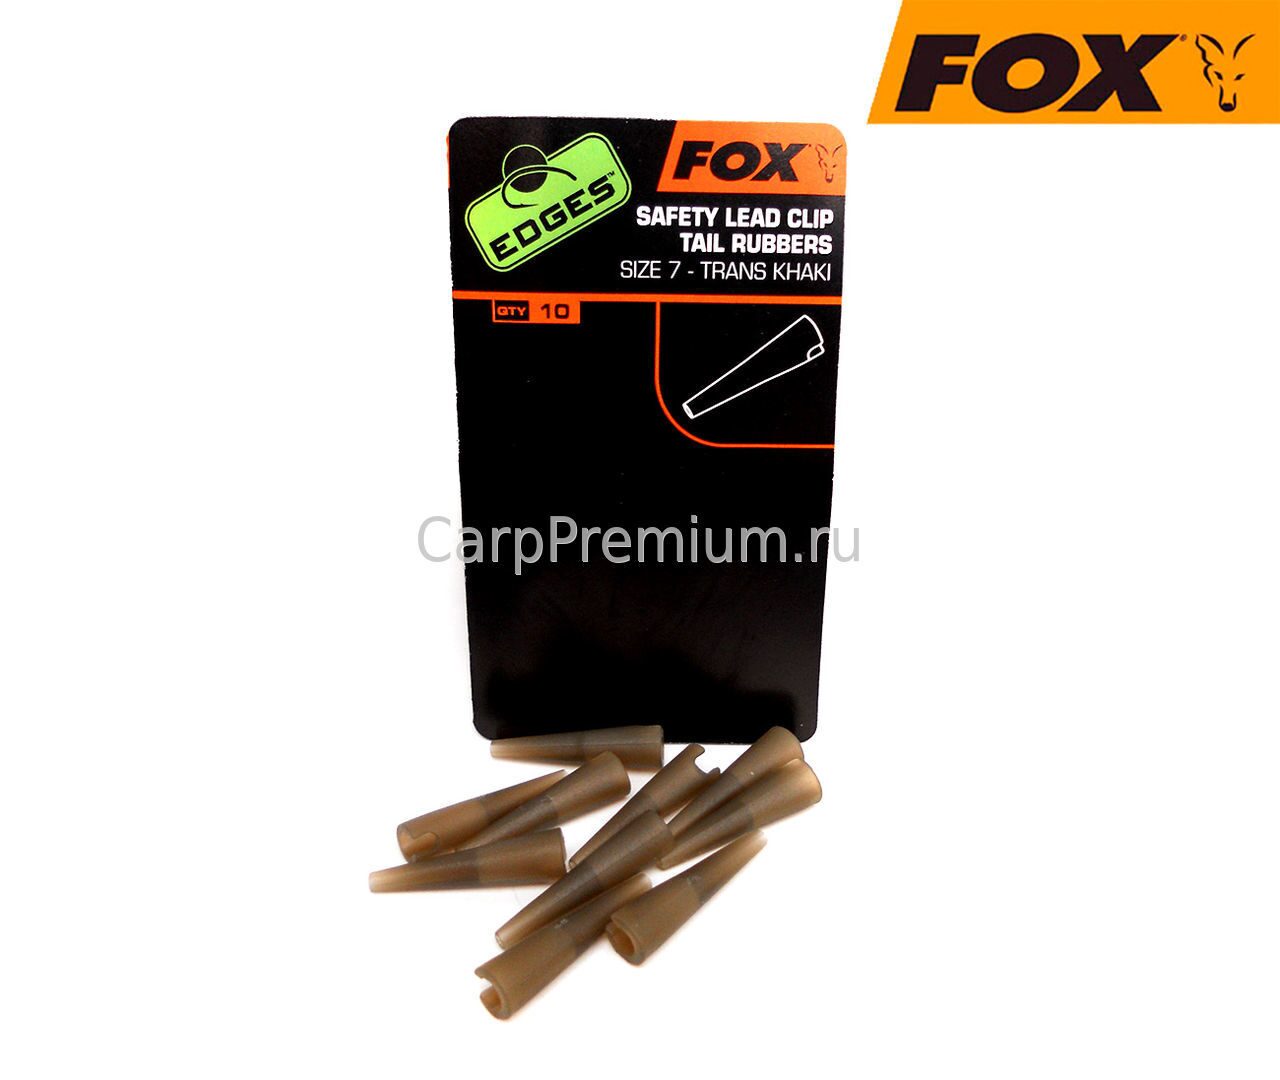 Конуса резиновые с прорезью для клипсы Fox (Фокс) - EDGES Lead Clip Tail Rubbers, 10 шт